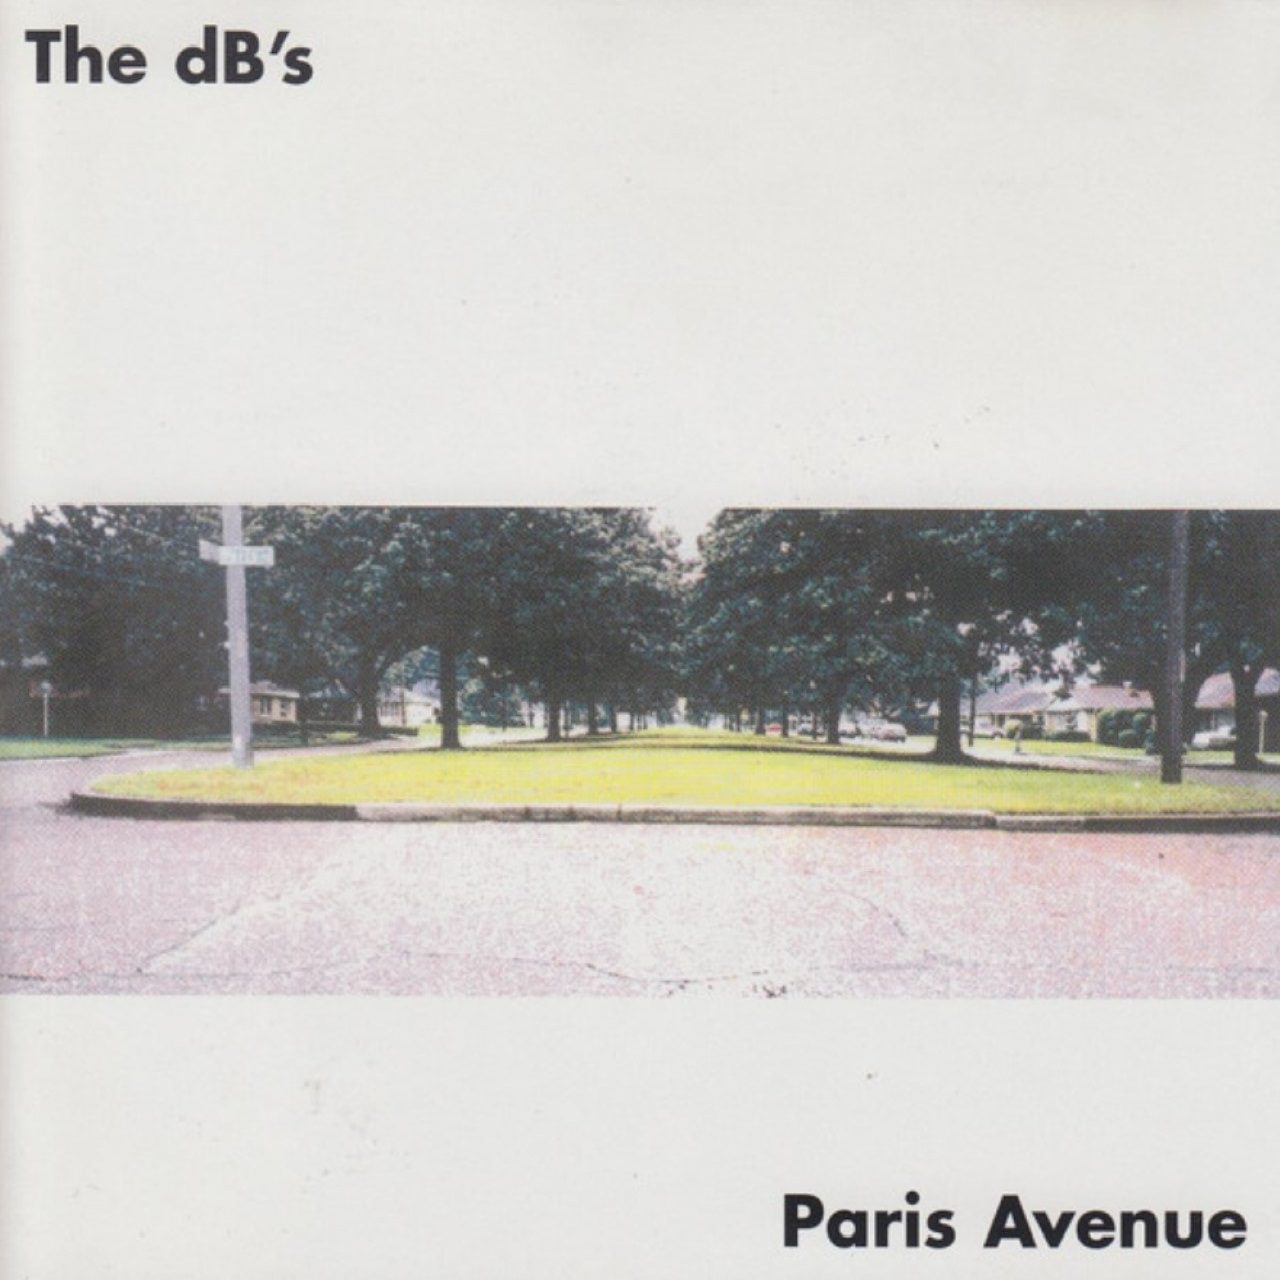 dB’s – Paris Avenue cover album